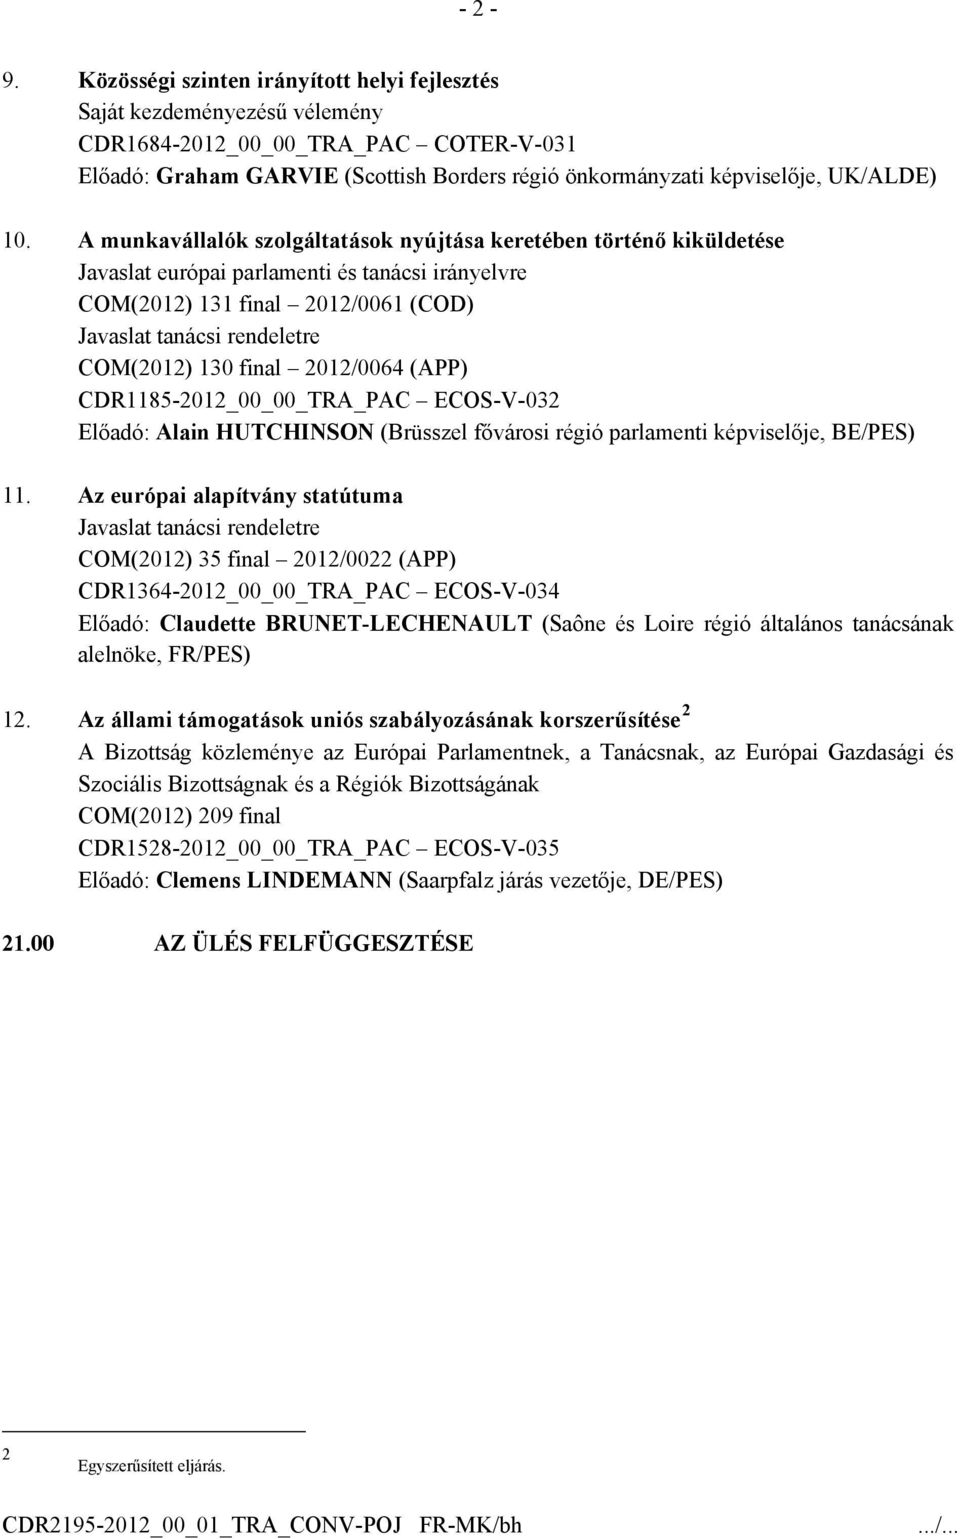 A munkavállalók szolgáltatások nyújtása keretében történő kiküldetése Javaslat európai parlamenti és tanácsi irányelvre COM(2012) 131 final 2012/0061 (COD) Javaslat tanácsi rendeletre COM(2012) 130